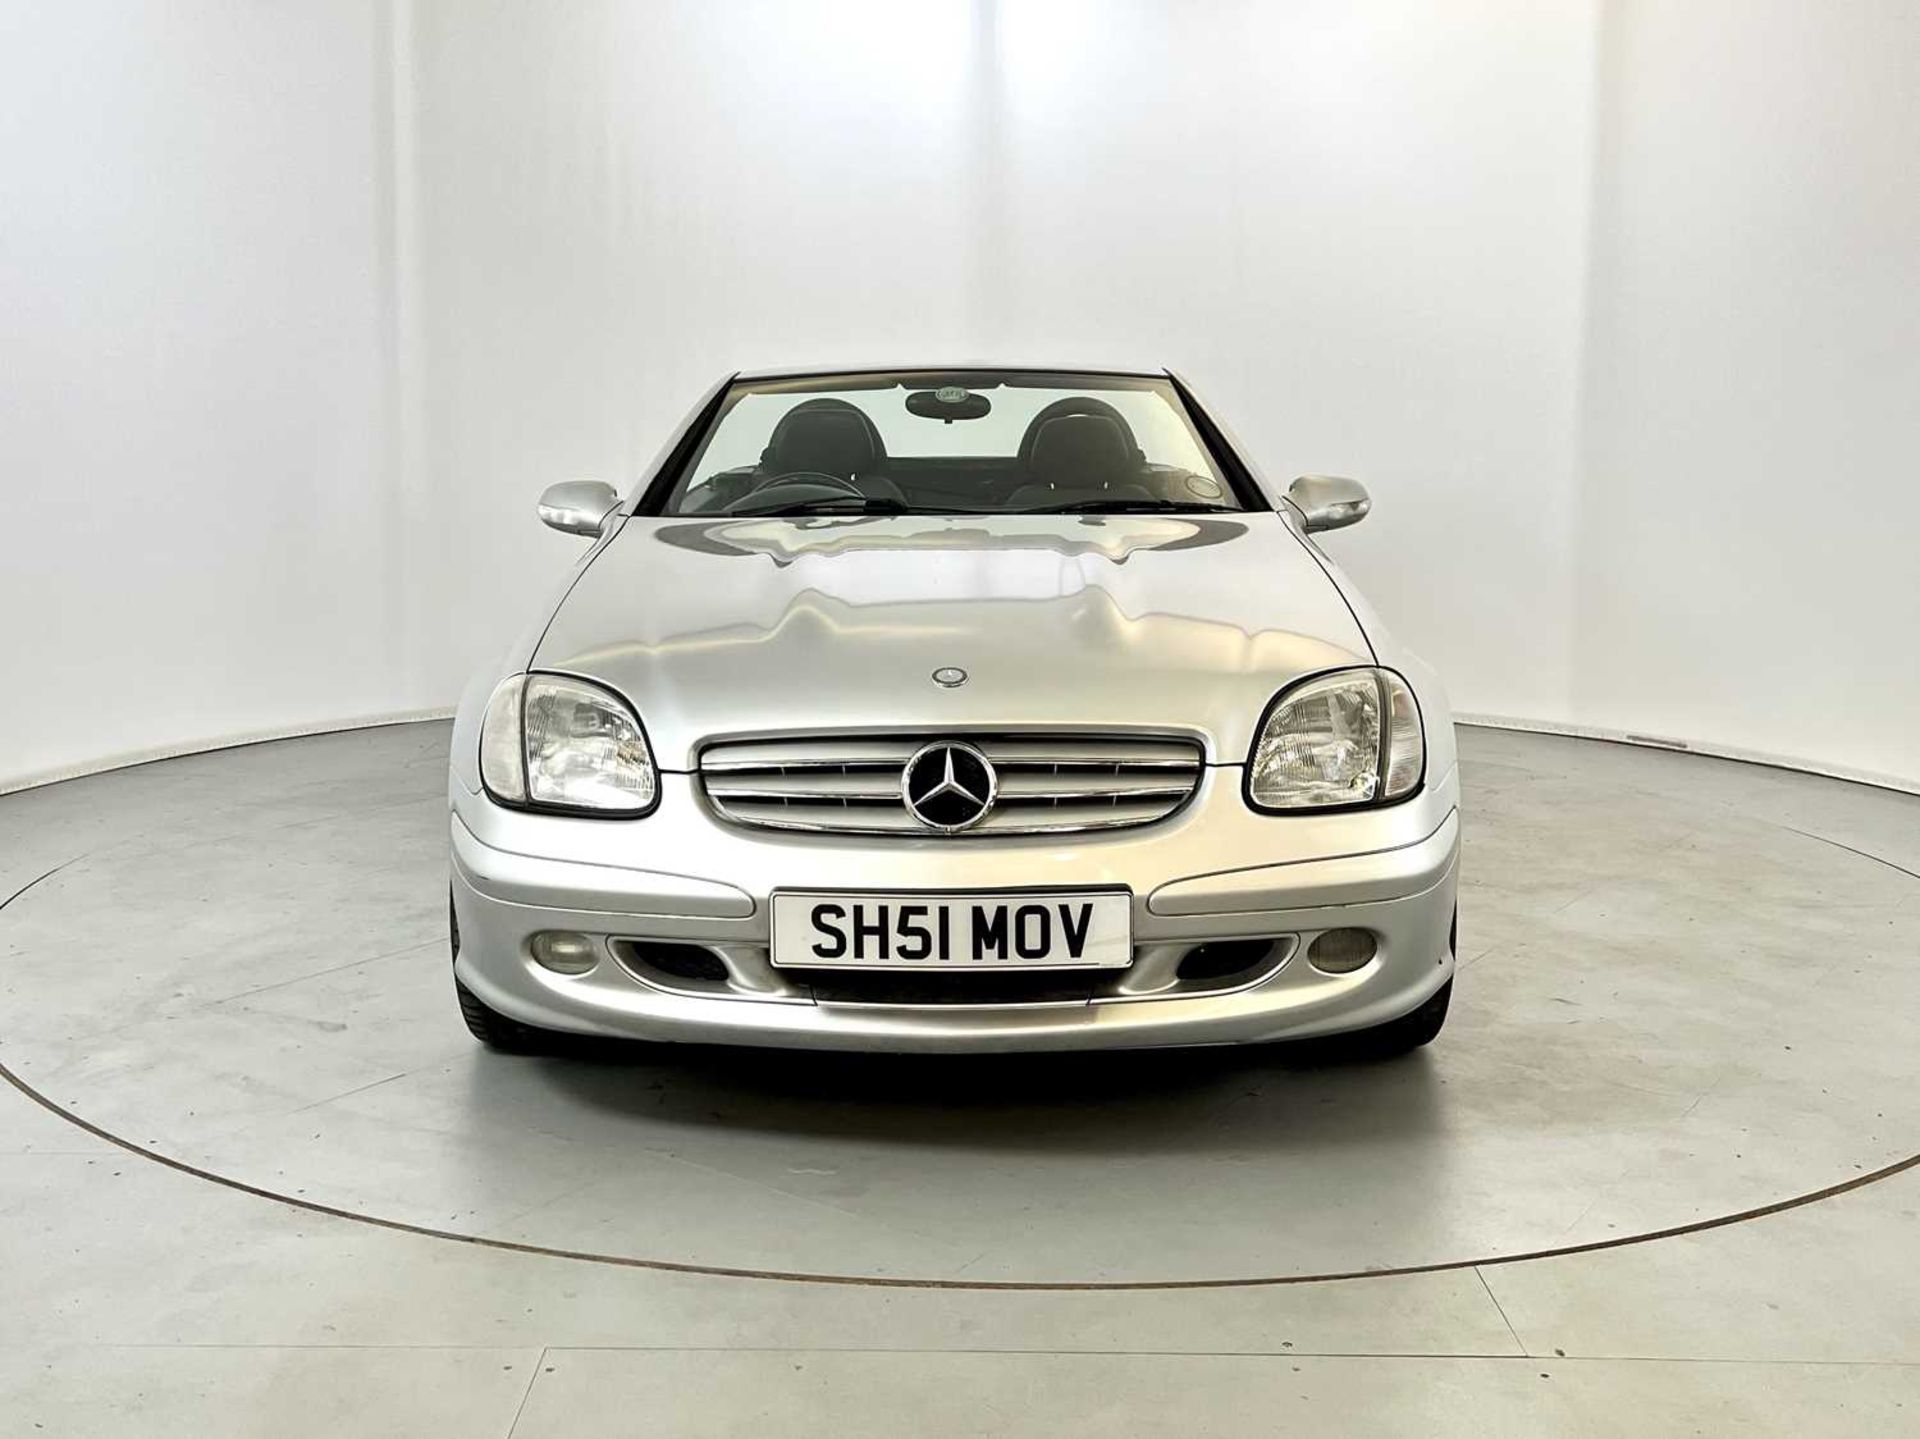 2002 Mercedes-Benz SLK320 - Image 3 of 30